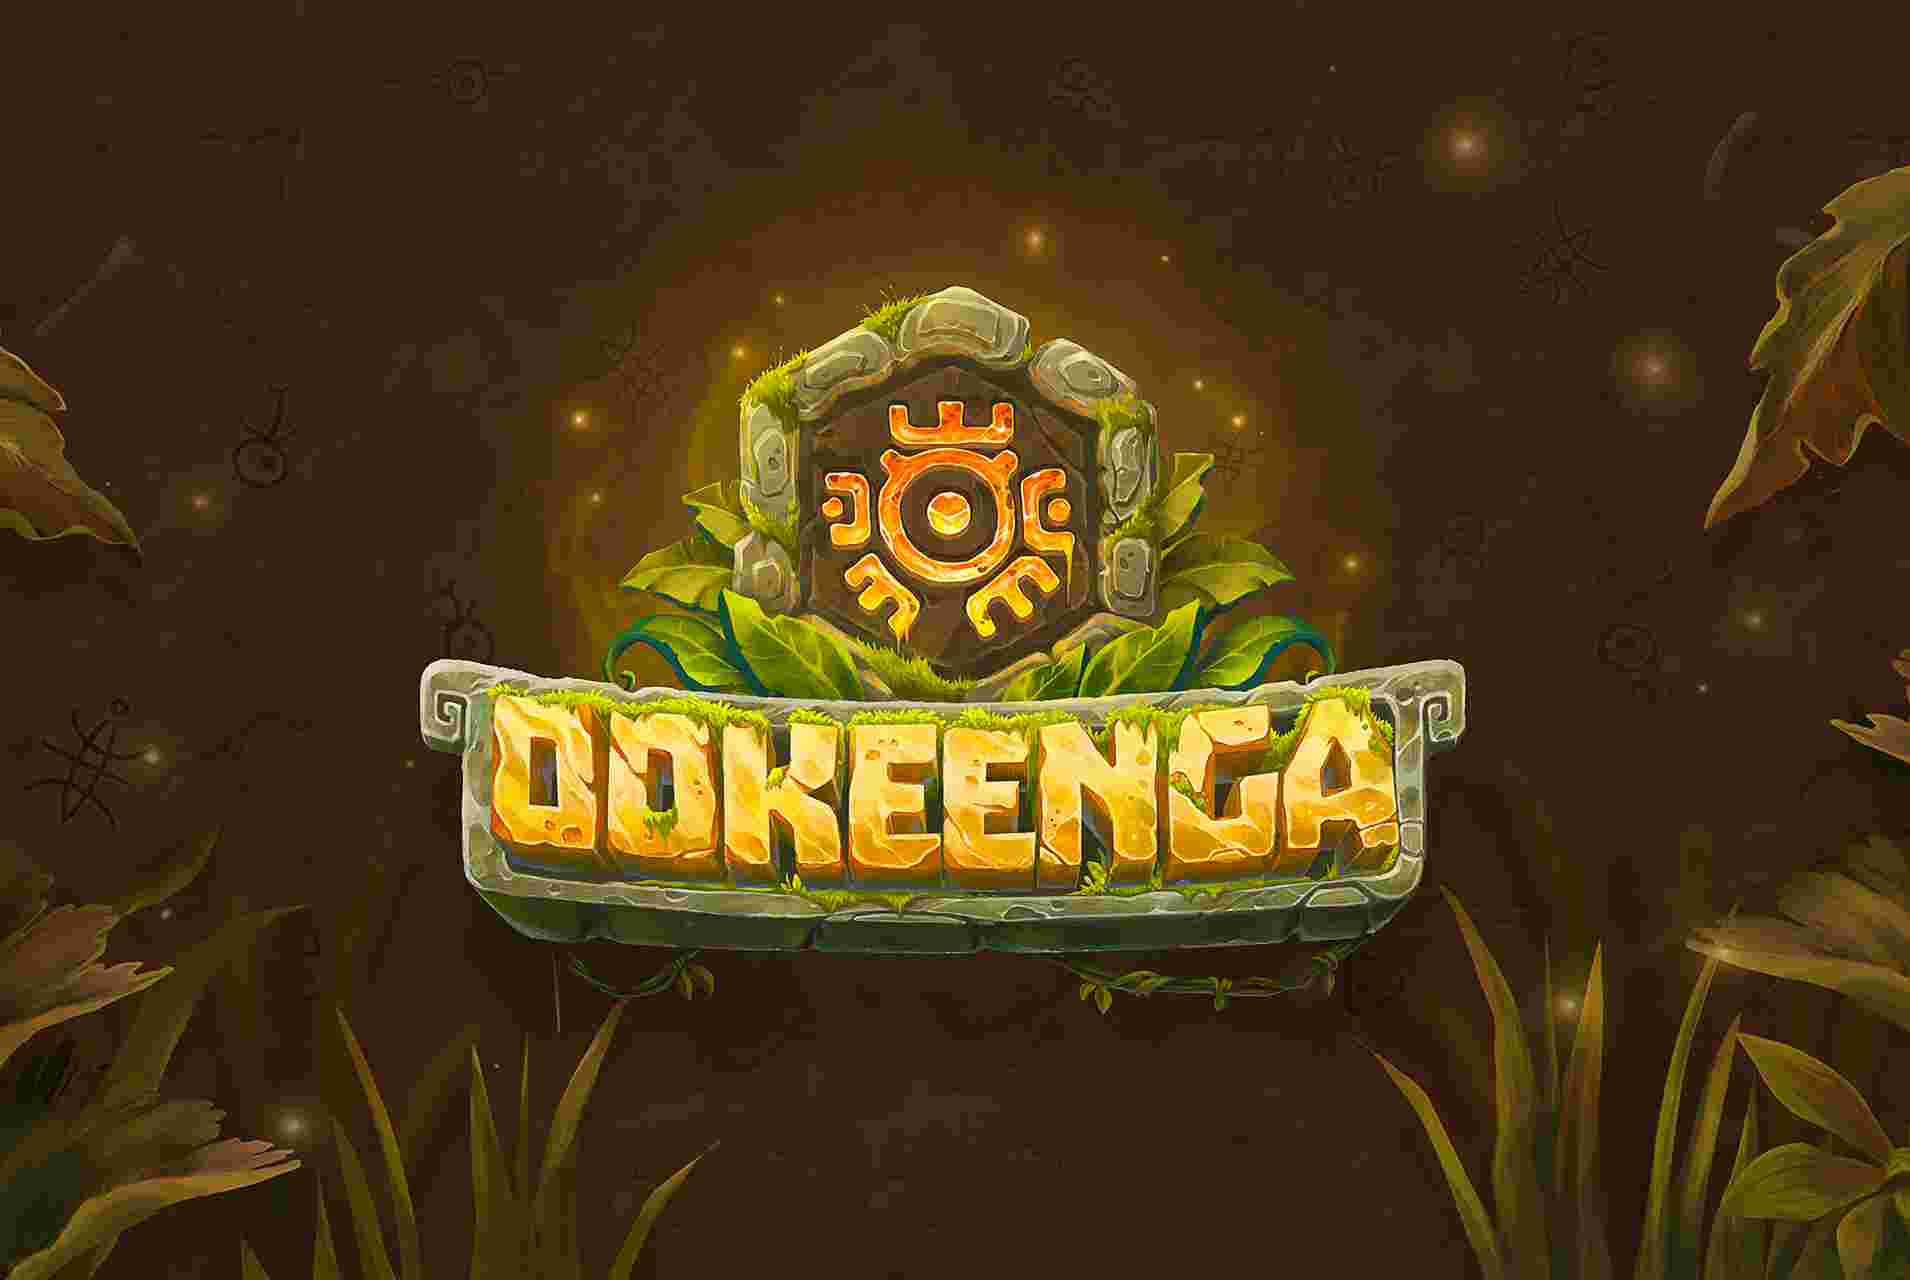 Ookeenga (OKG) - Game Review